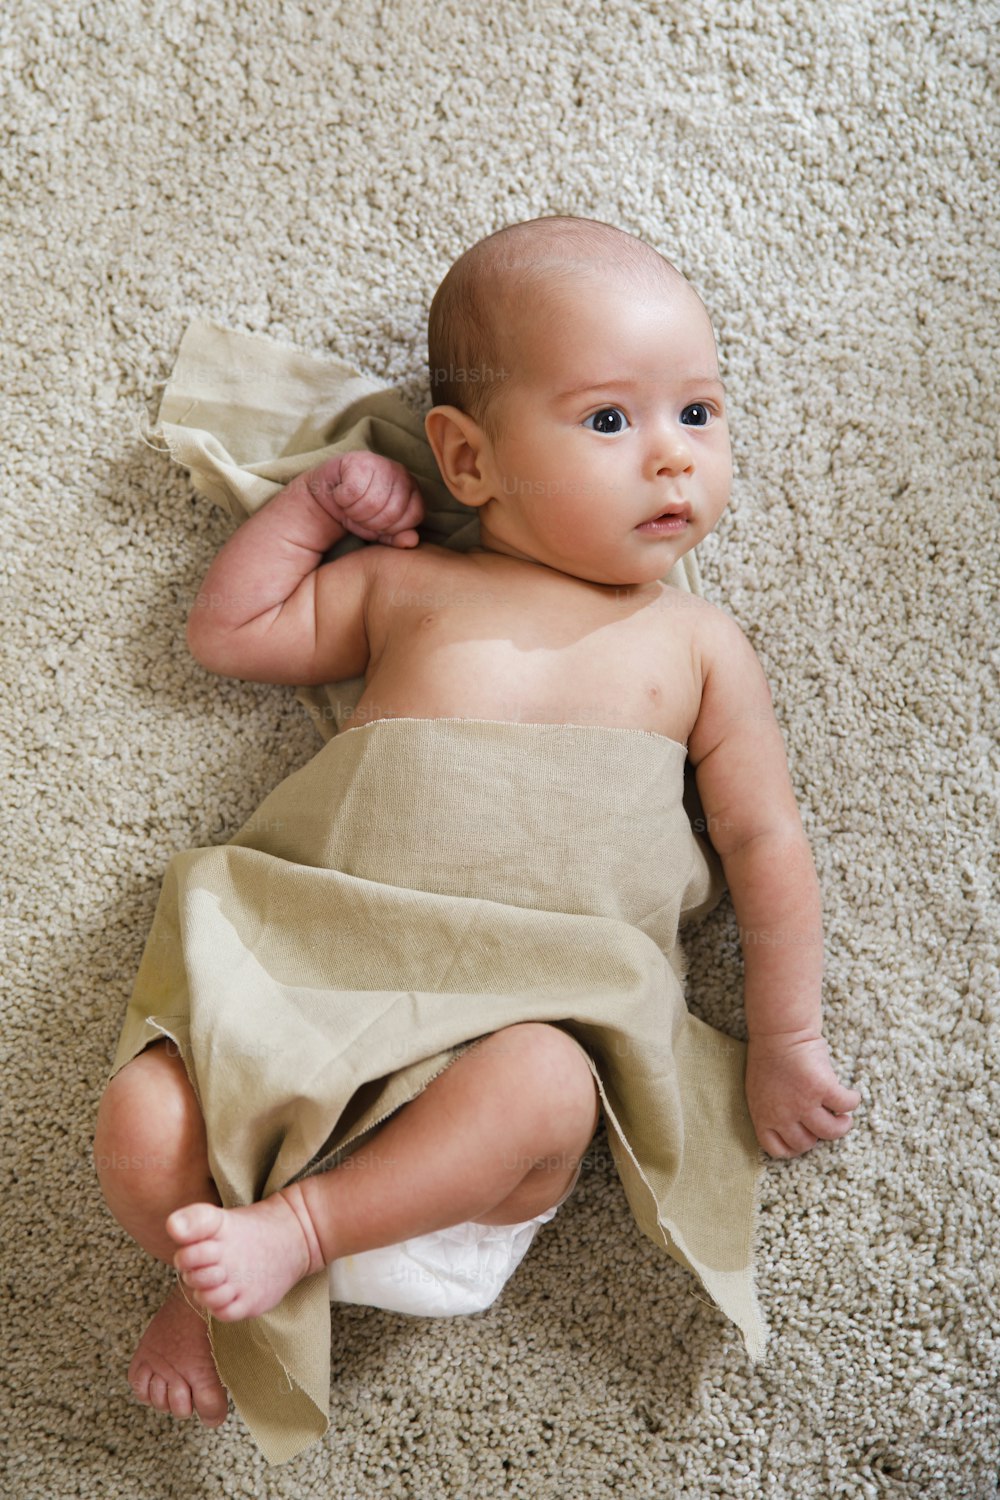 リネン生地で覆われたかわいい赤ちゃんが柔らかいカーペットの上に横たわっています